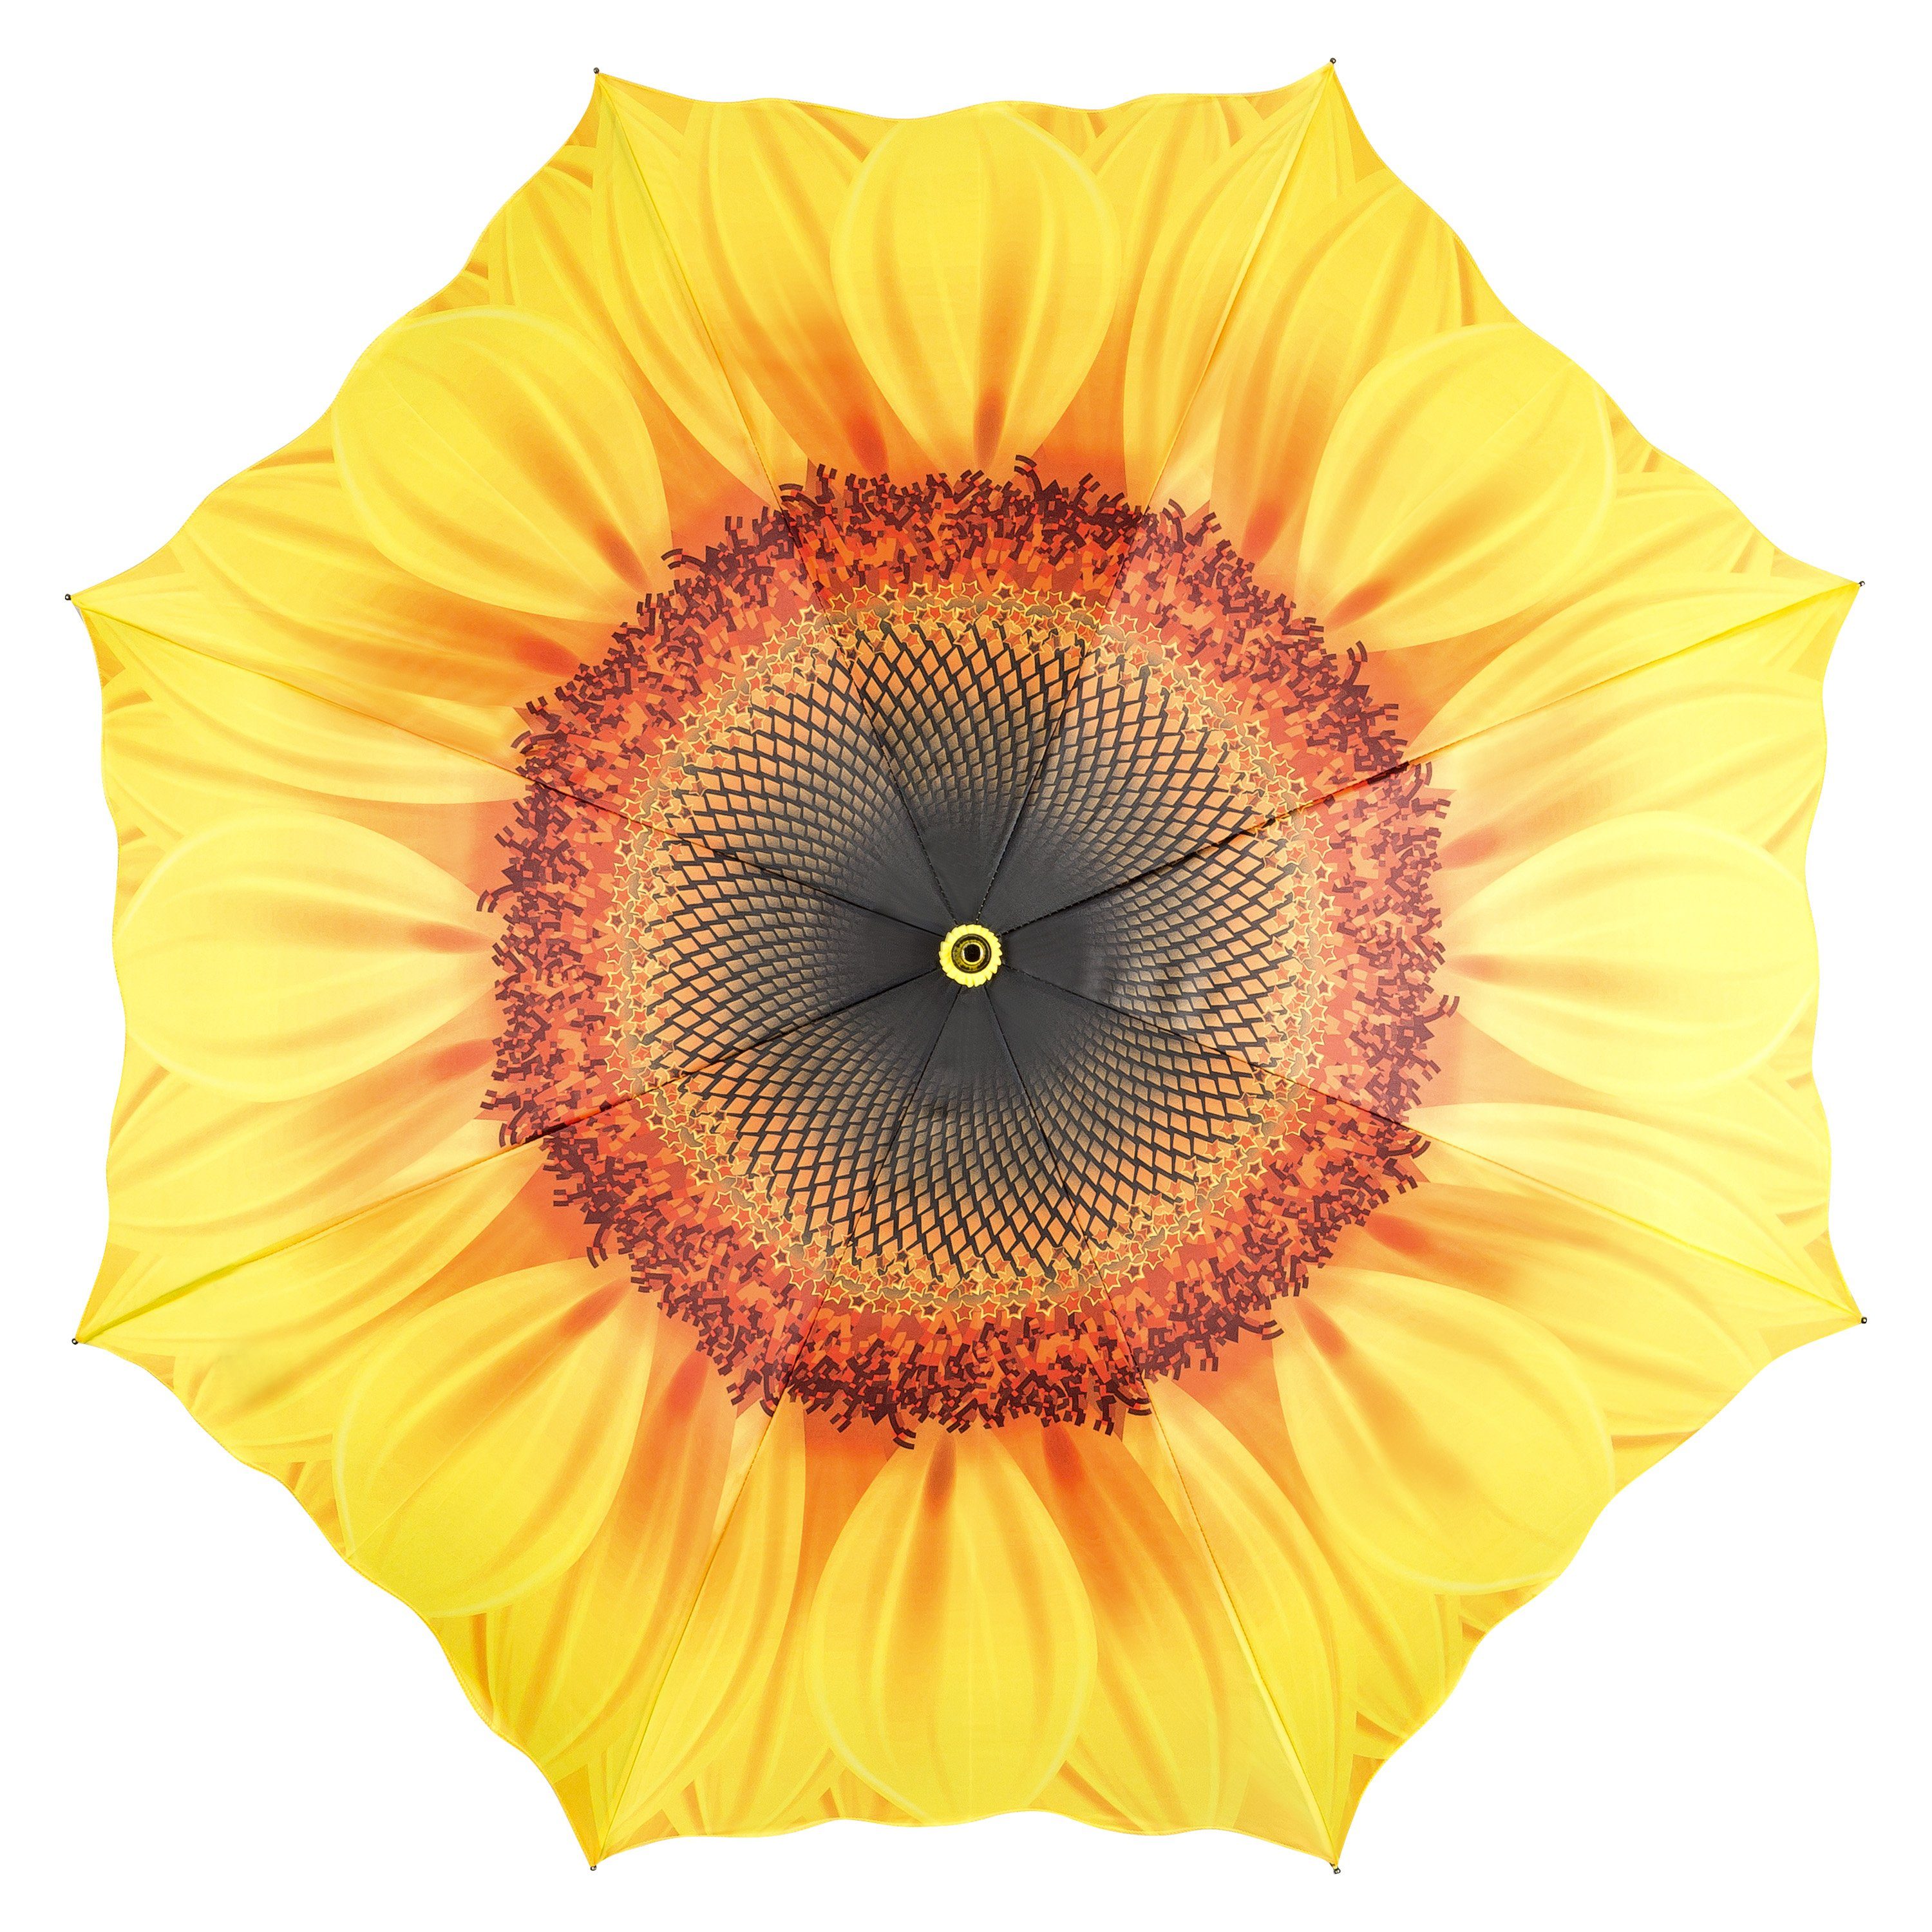 Taschenregenschirm Kompakt, Sonnenblume Motivschirm Stabil Lilienfeld von Blumenmuster Blüte Leicht